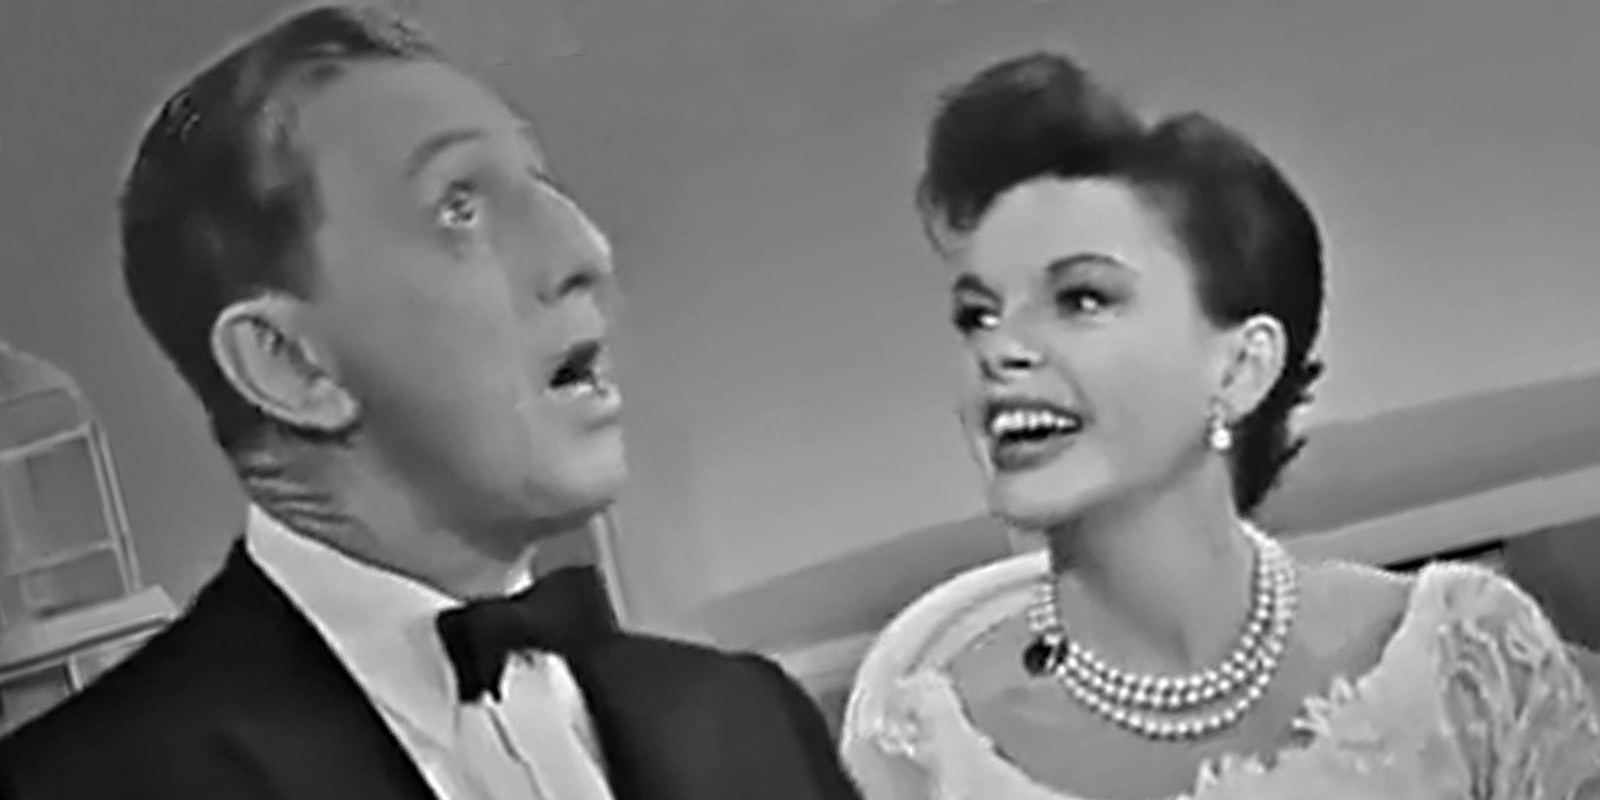 Judy Garland and Ray Bolger singing